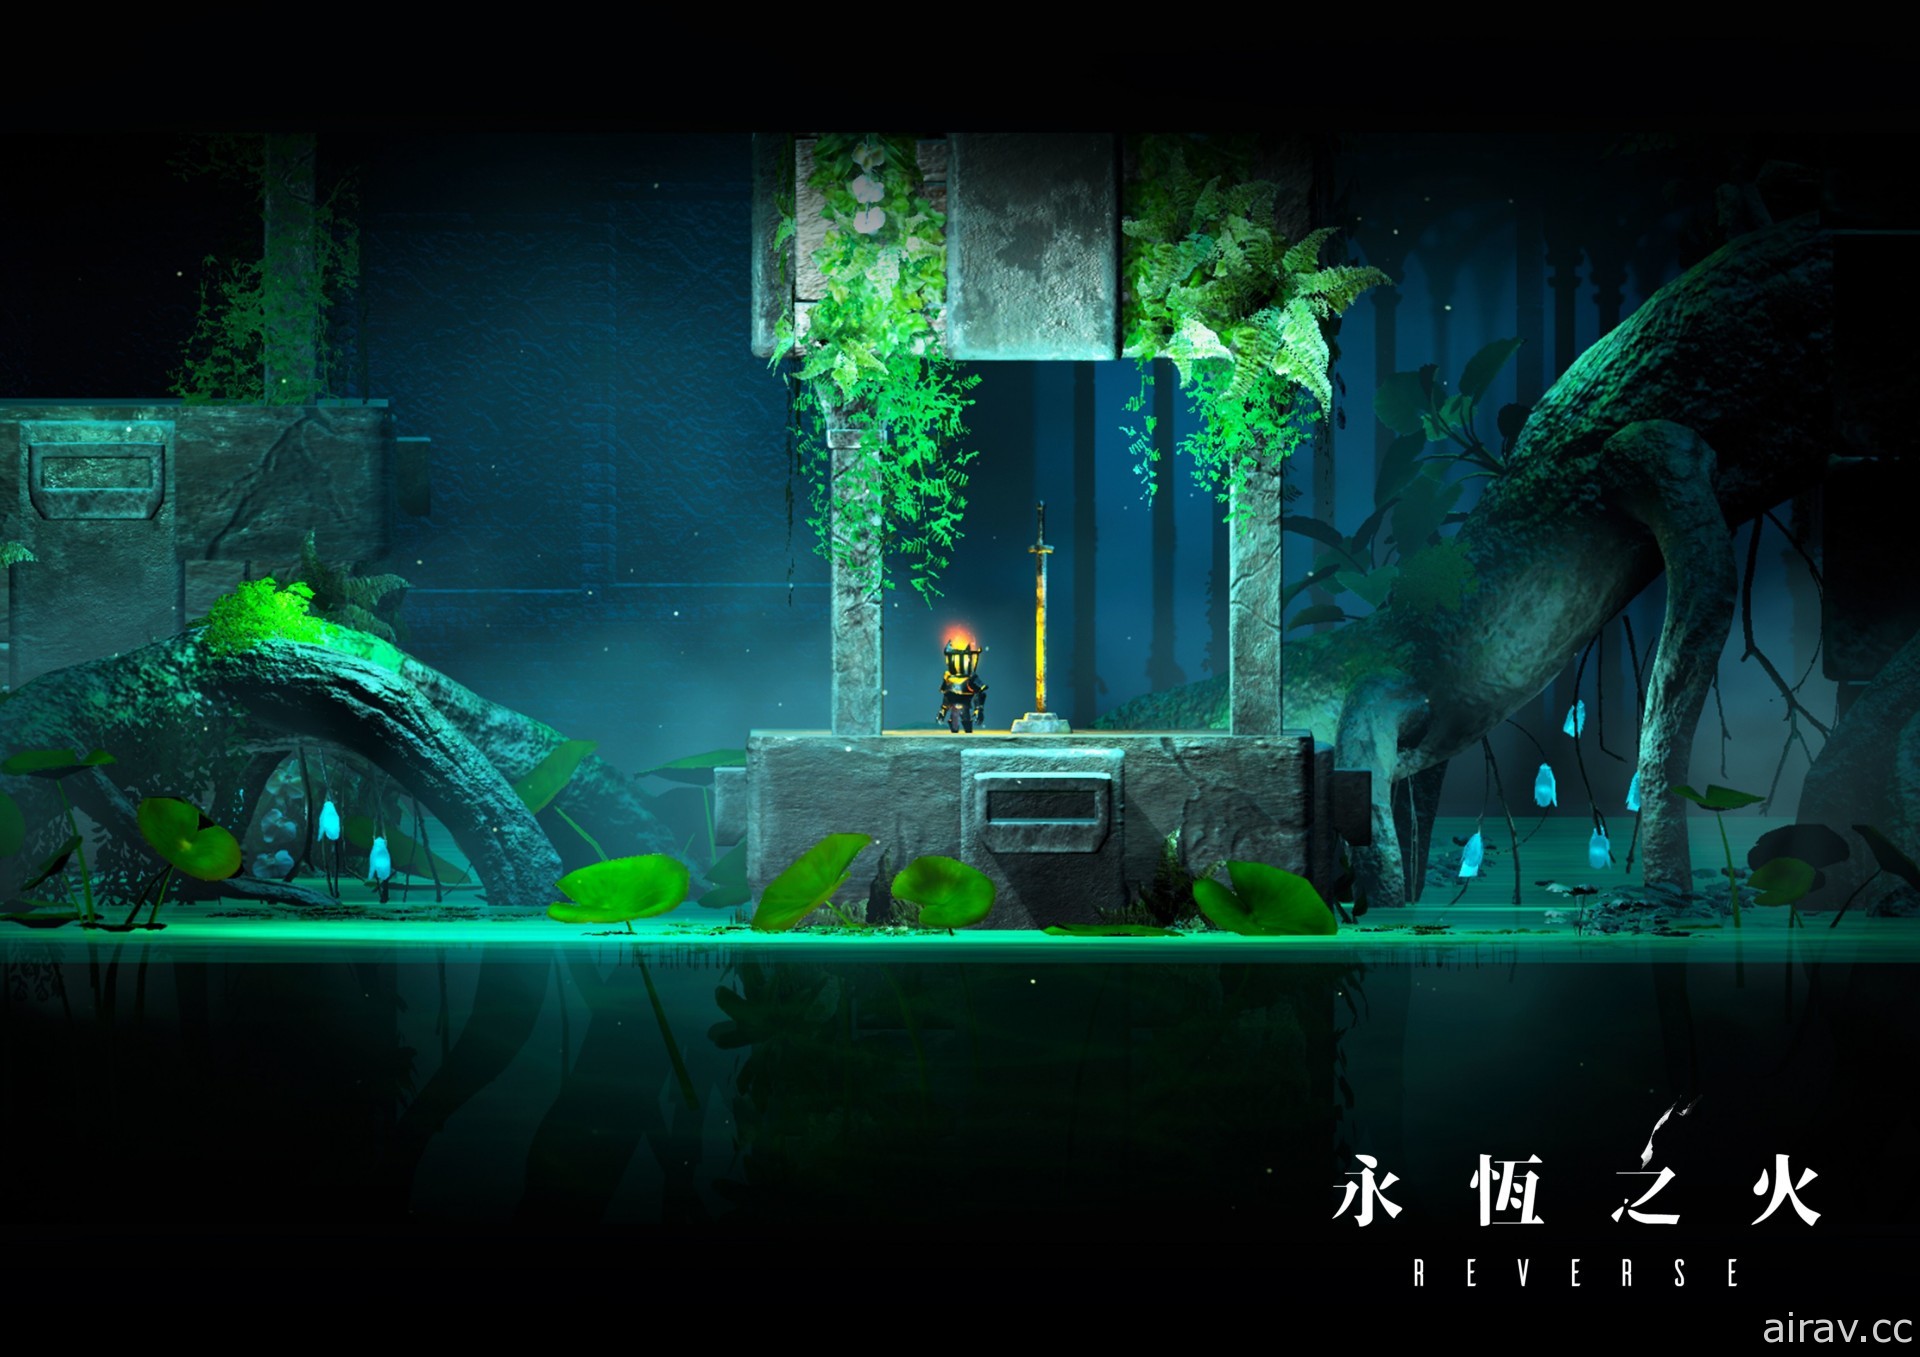 中國科大「RESET-STUDIO」製作冒險遊戲《永恆之火》以視覺錯視通過障礙與陷阱